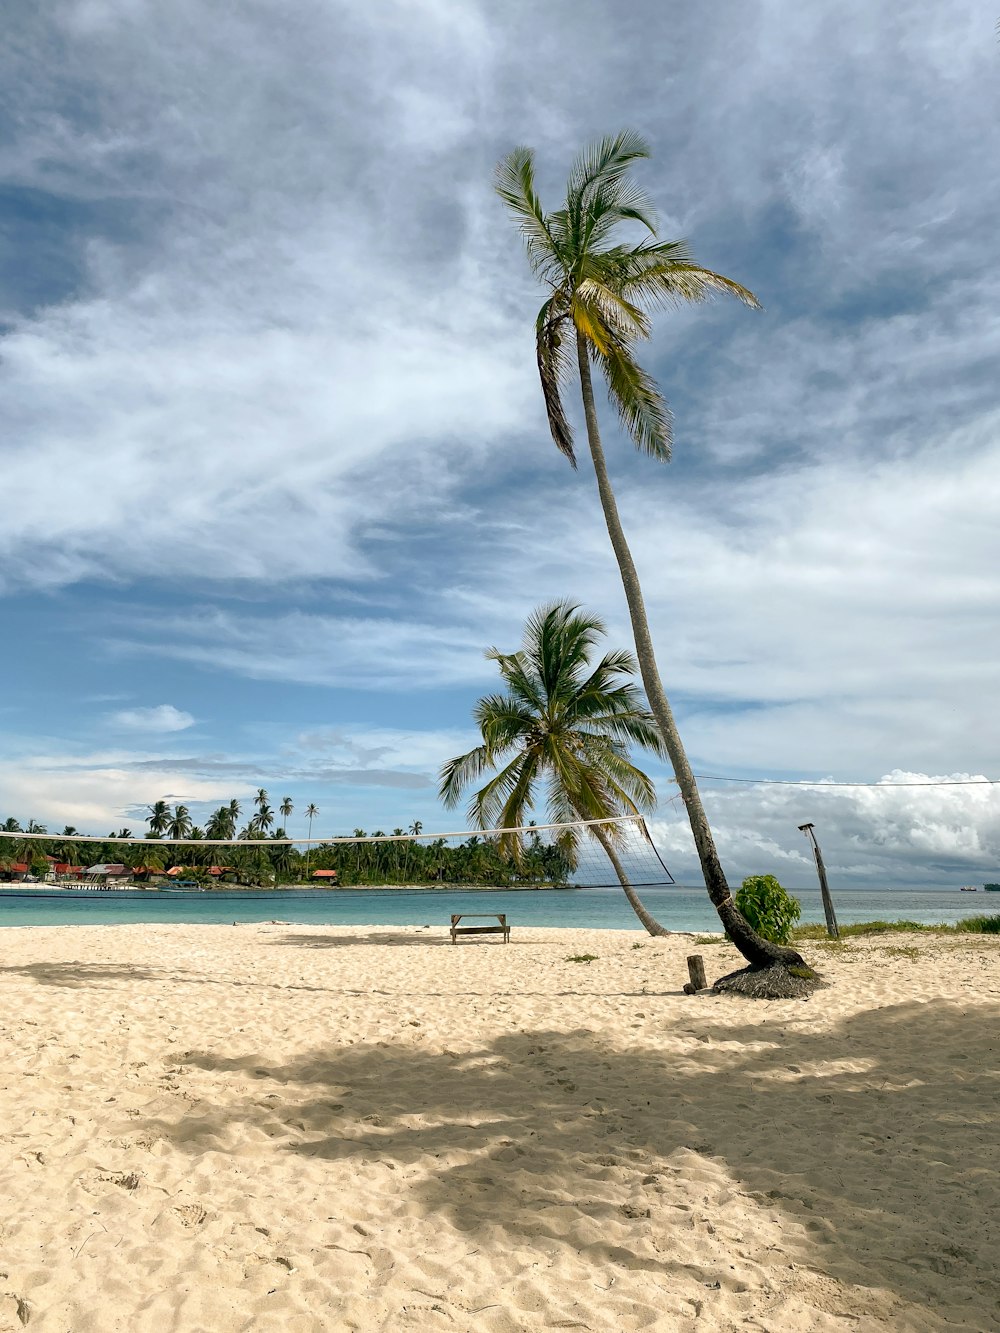 a palm tree on a beach with a blue sky